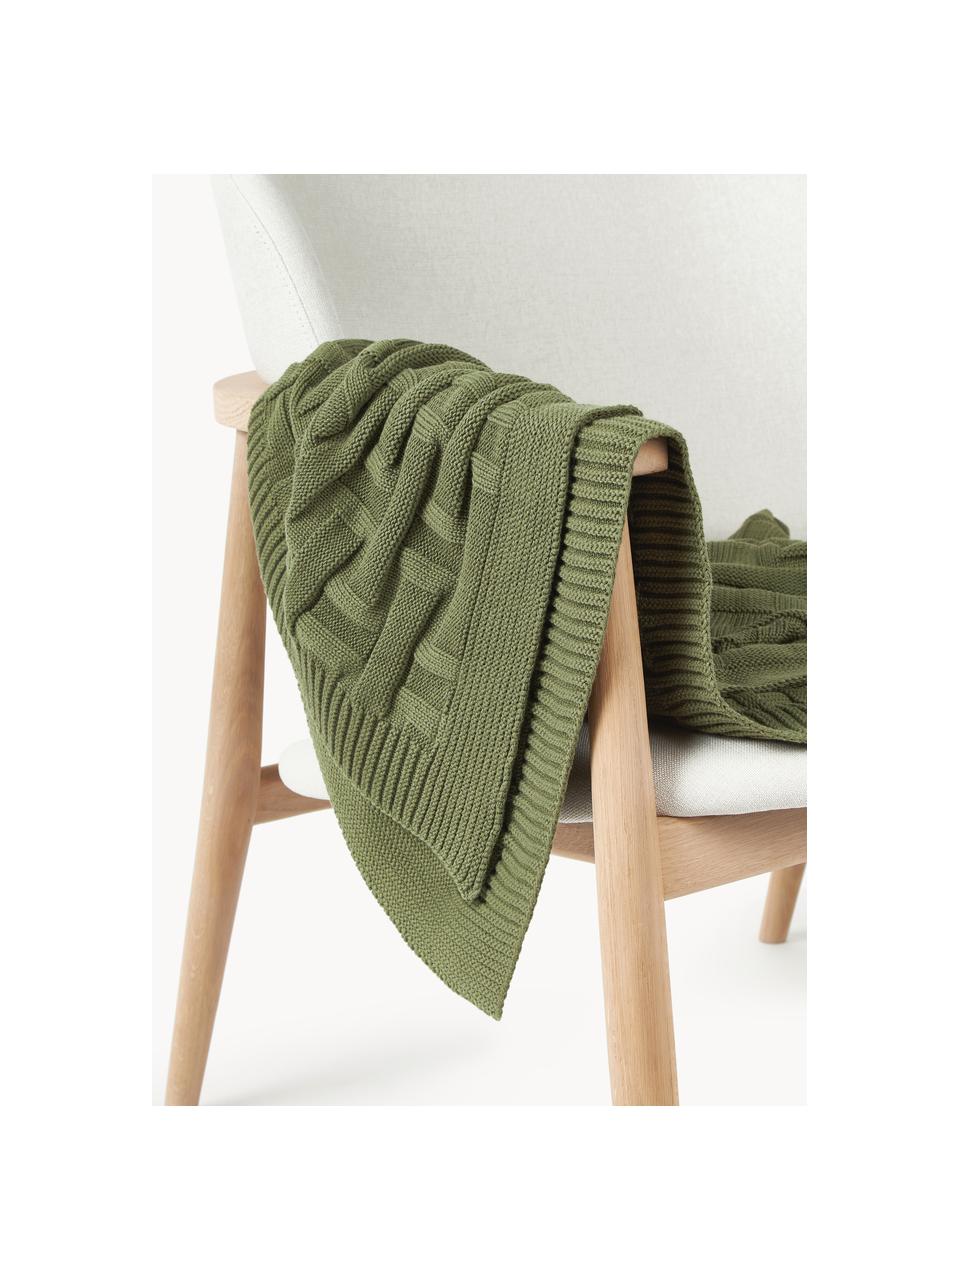 Couverture en coton tricoté Gwen, 100% coton, Vert olive, larg. 130 x long. 170 cm